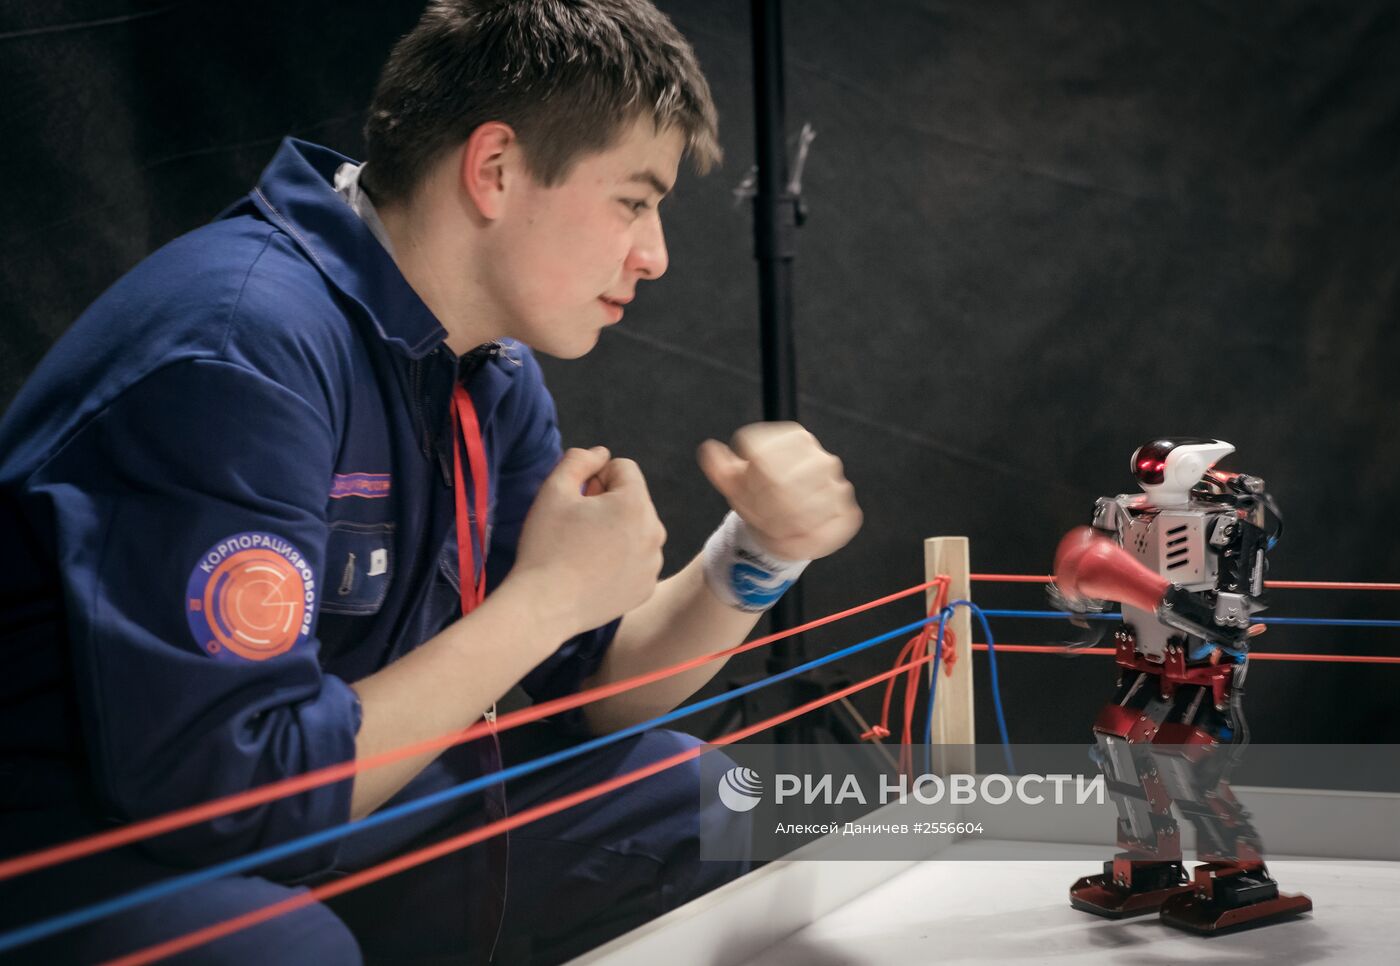 Интерактивная выставка "Бал роботов"